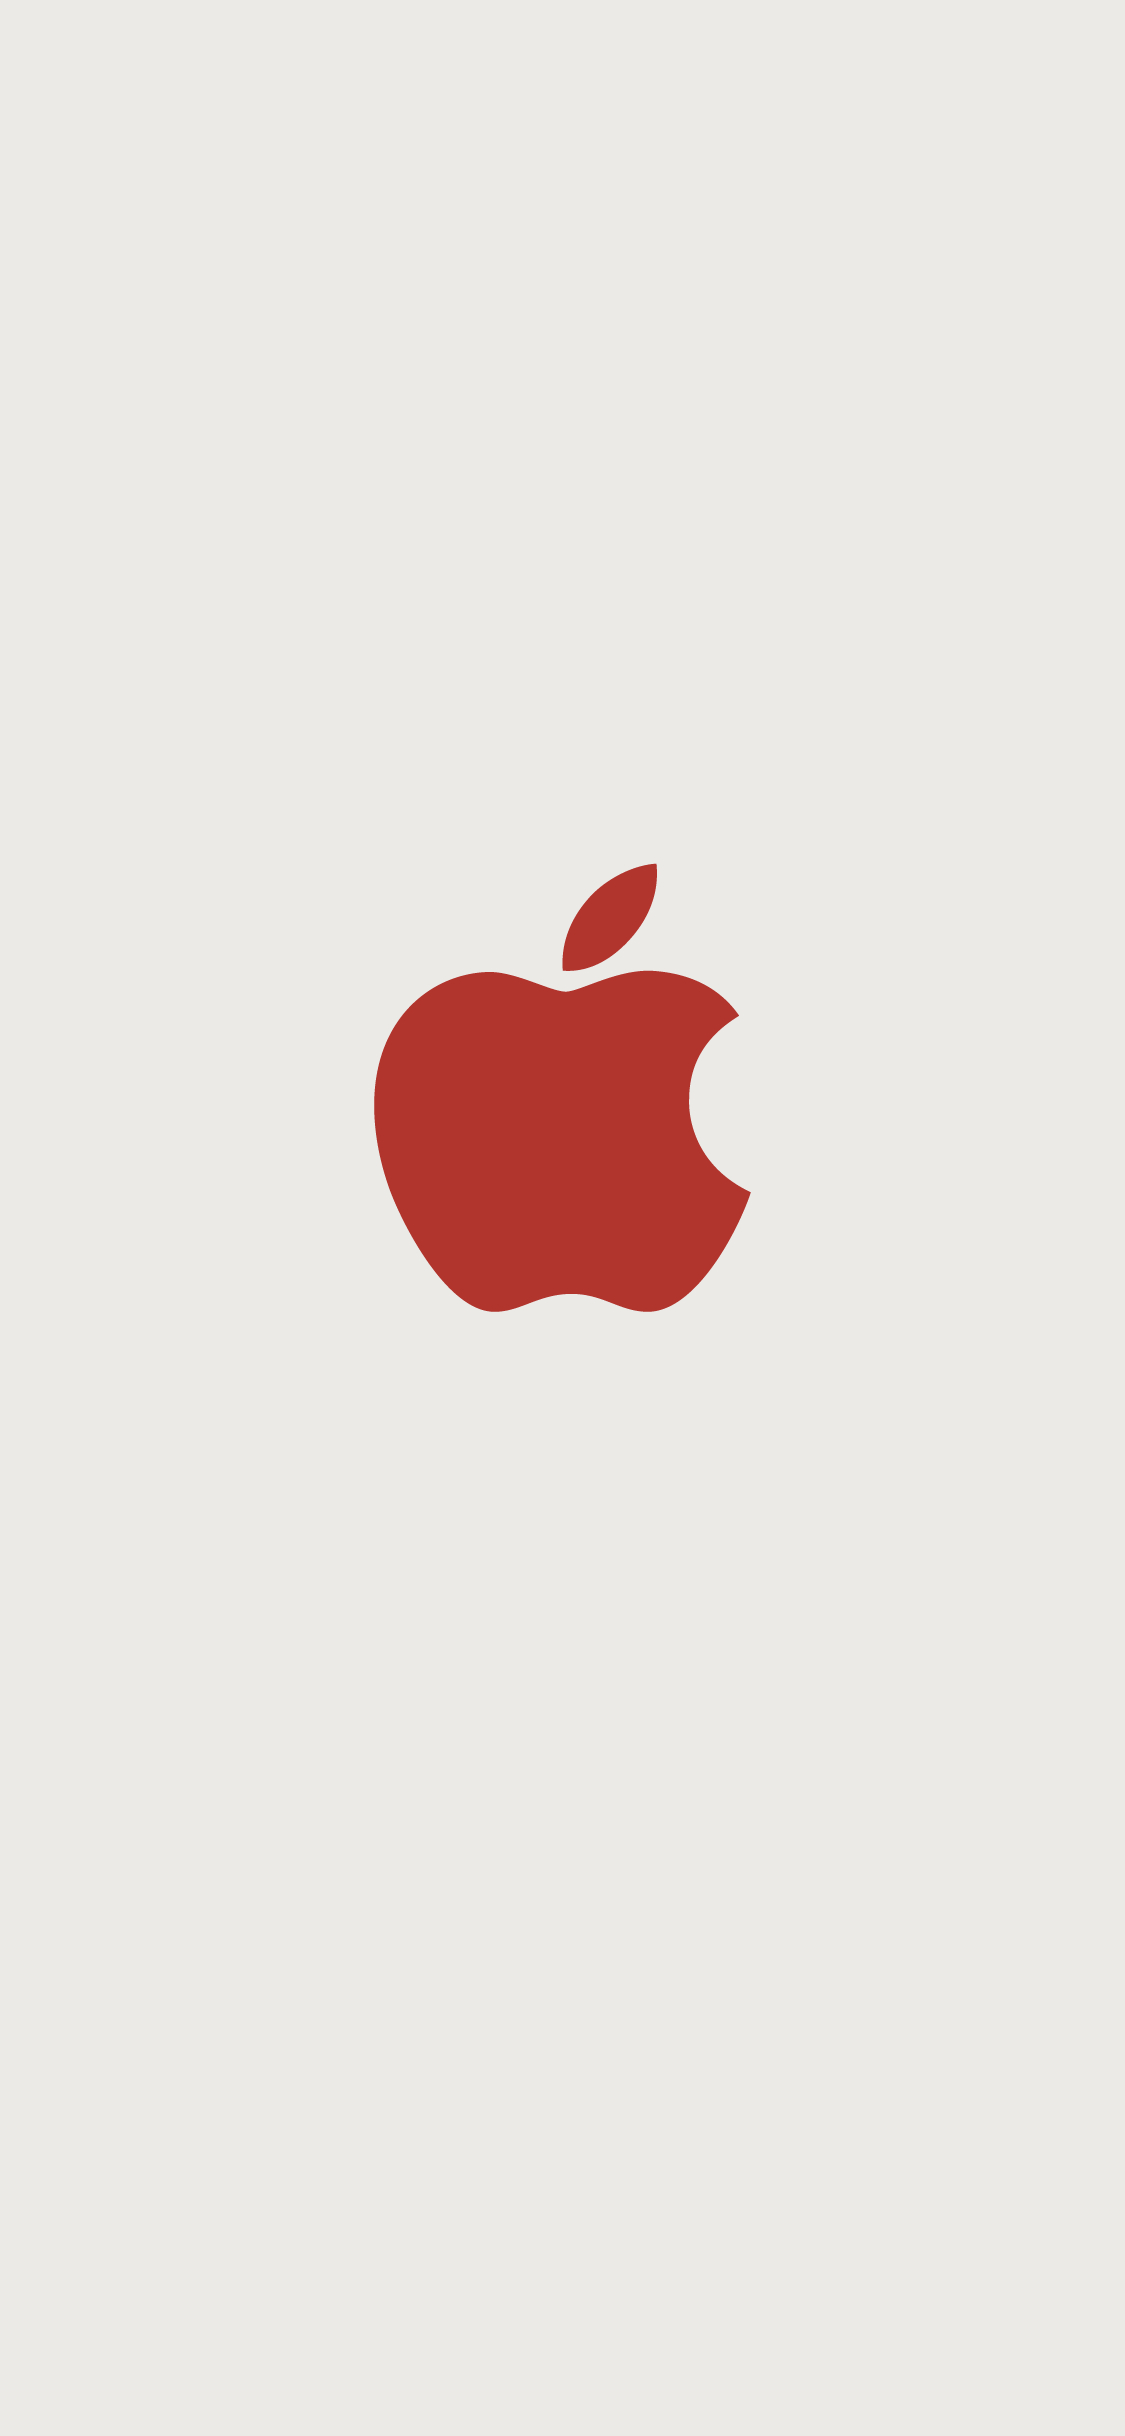 1125x2436 Apple logo white and red | Apple logo wallpaper iphone, Apple logo, Apple logo white